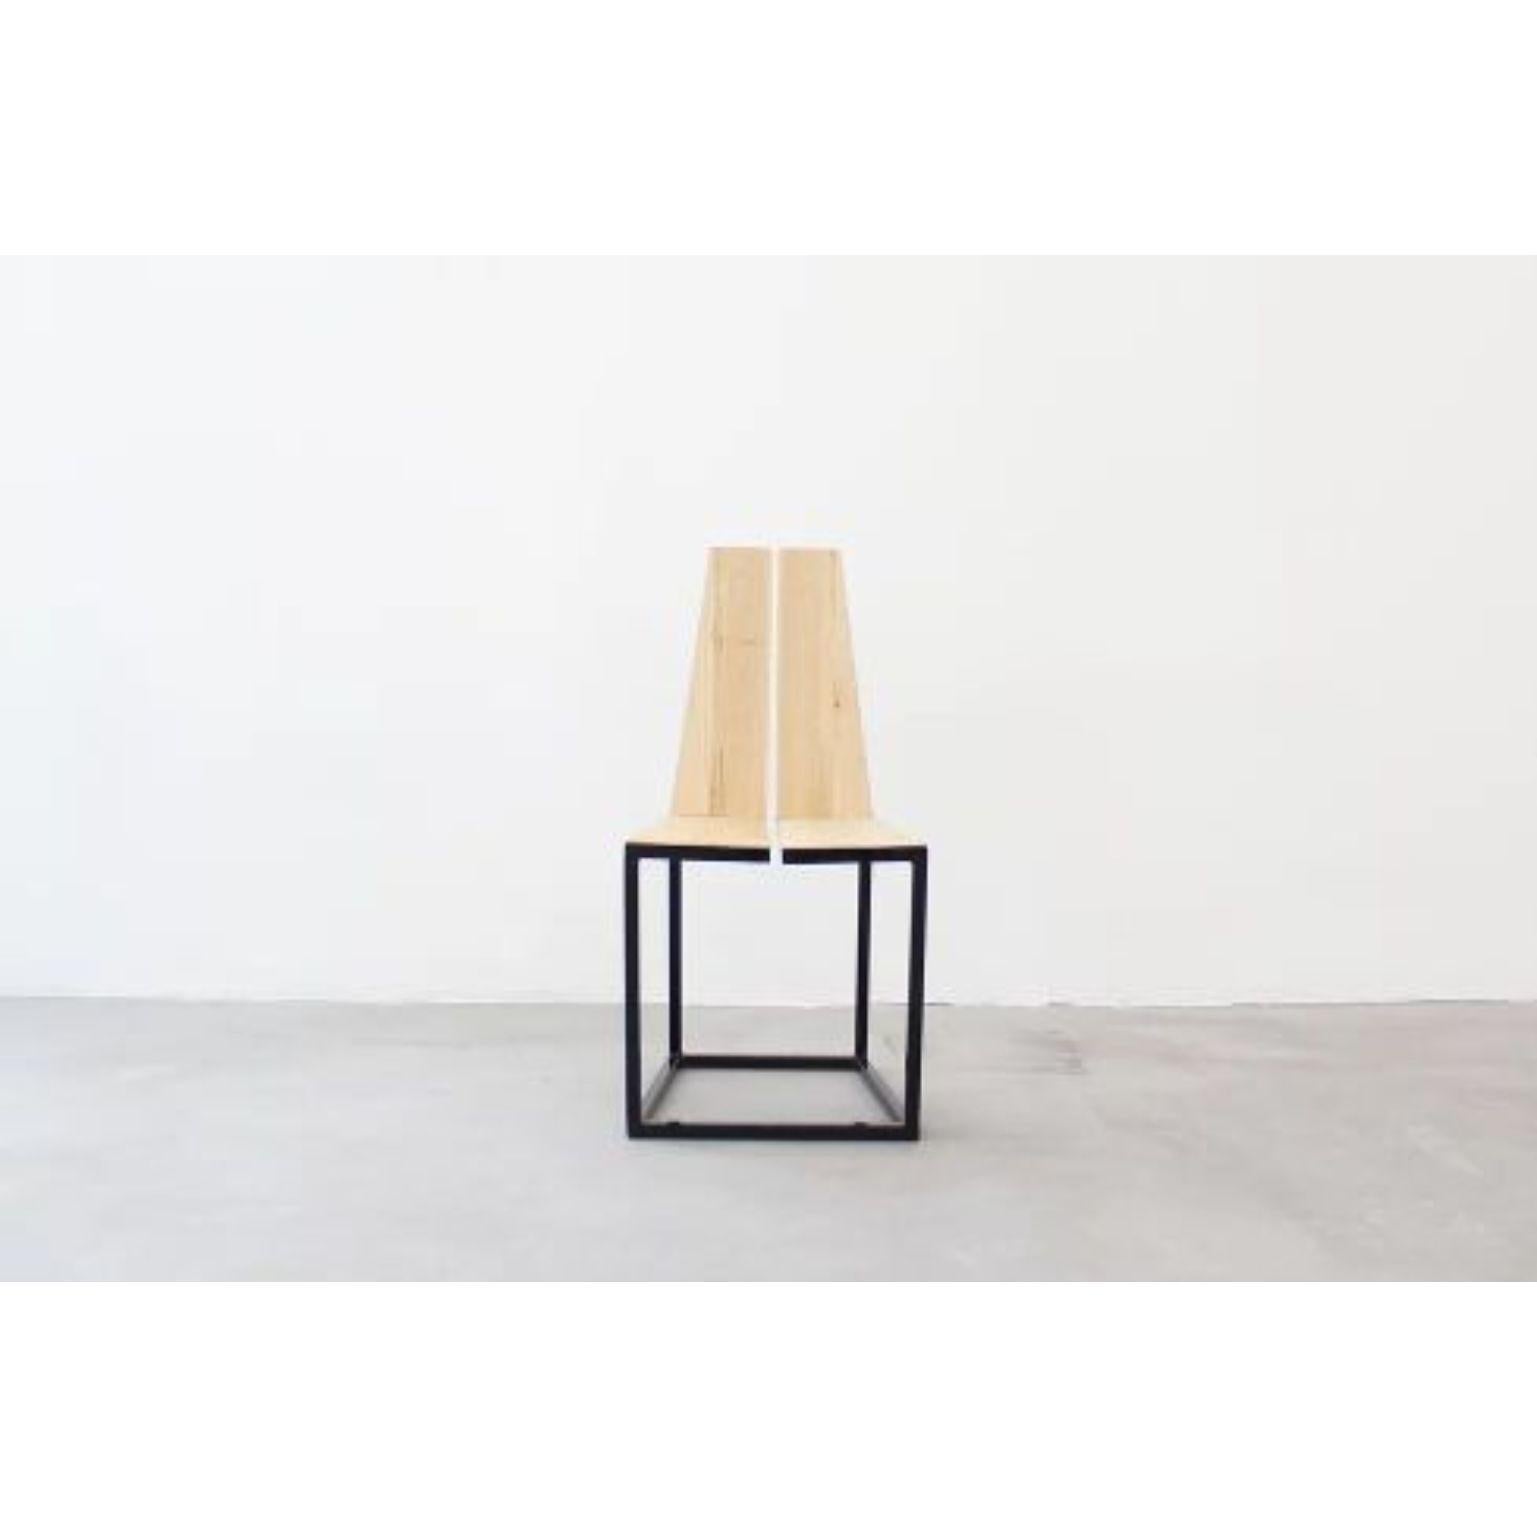 Simmis Stuhl von La Cube
Madrid, 2016
MATERIALIEN: Eisen, Kastanie
Abmessungen: 90 x 45 x 45 cm

Der Simmis-Stuhl spielt mit seiner Symmetrie aus verschiedenen Perspektiven. Einerseits ist die Symmetrie zwischen den Holzteilen, die durch einen